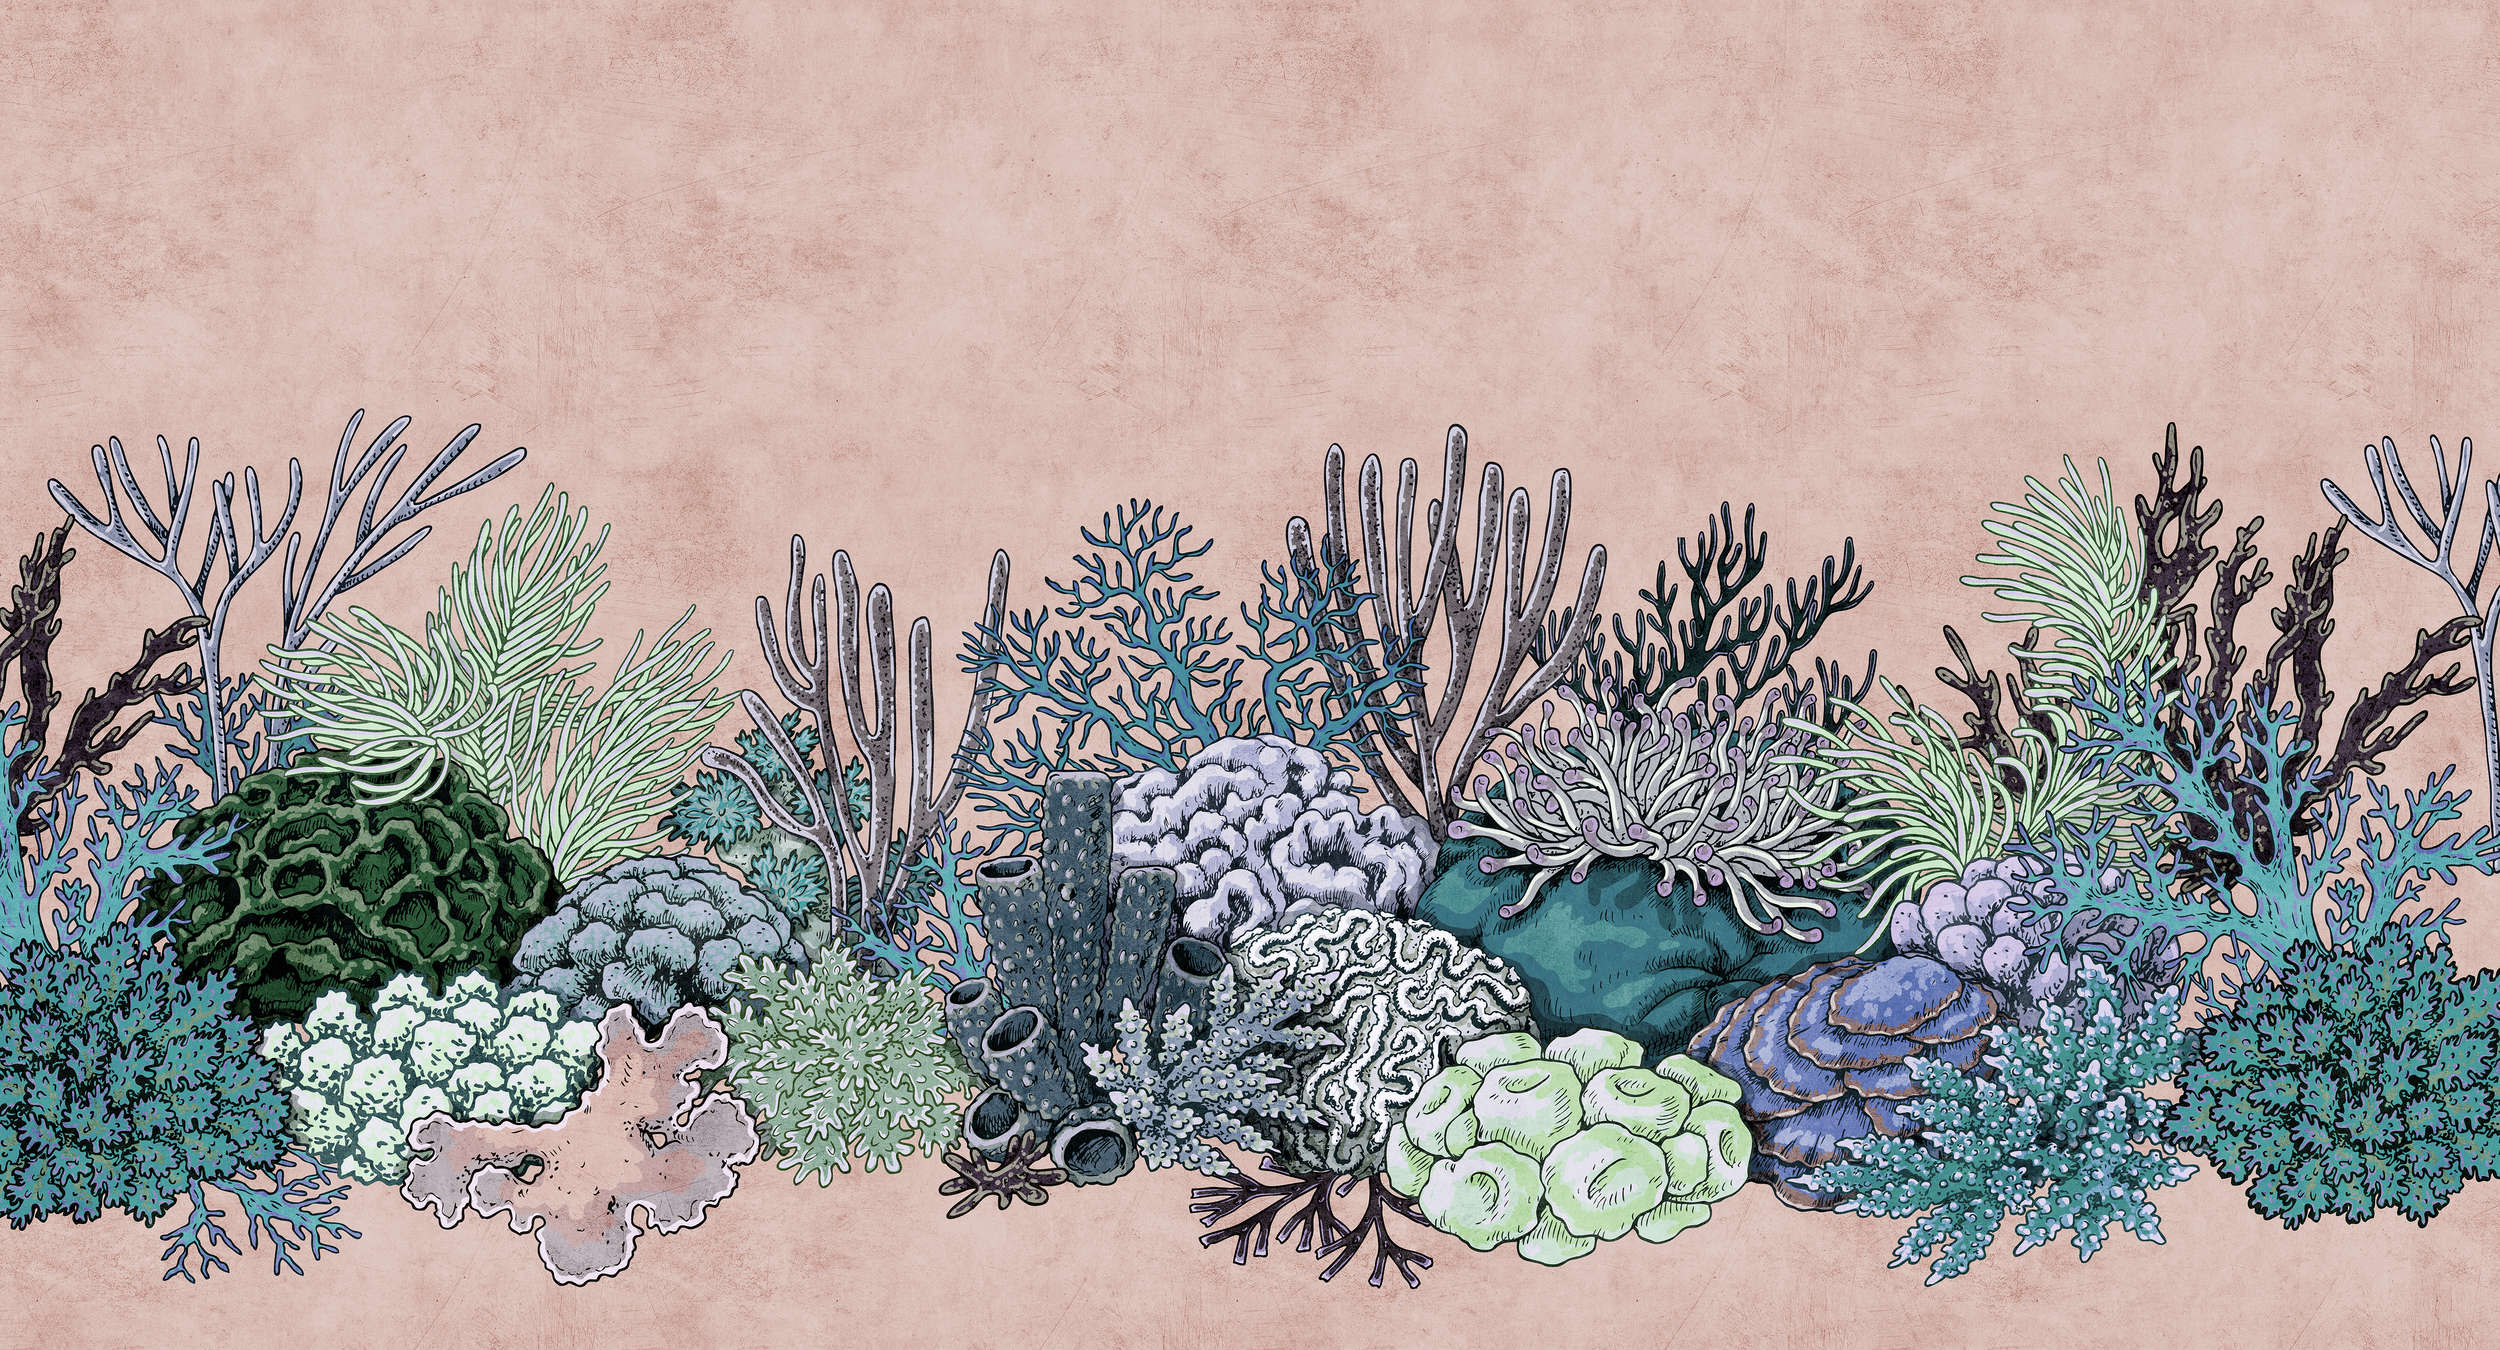             Octopus's Garden 2 - Koraalbehang in vloeipapierstructuur in tekenstijl - Groen, Roze | Strukturen vliesbehang
        